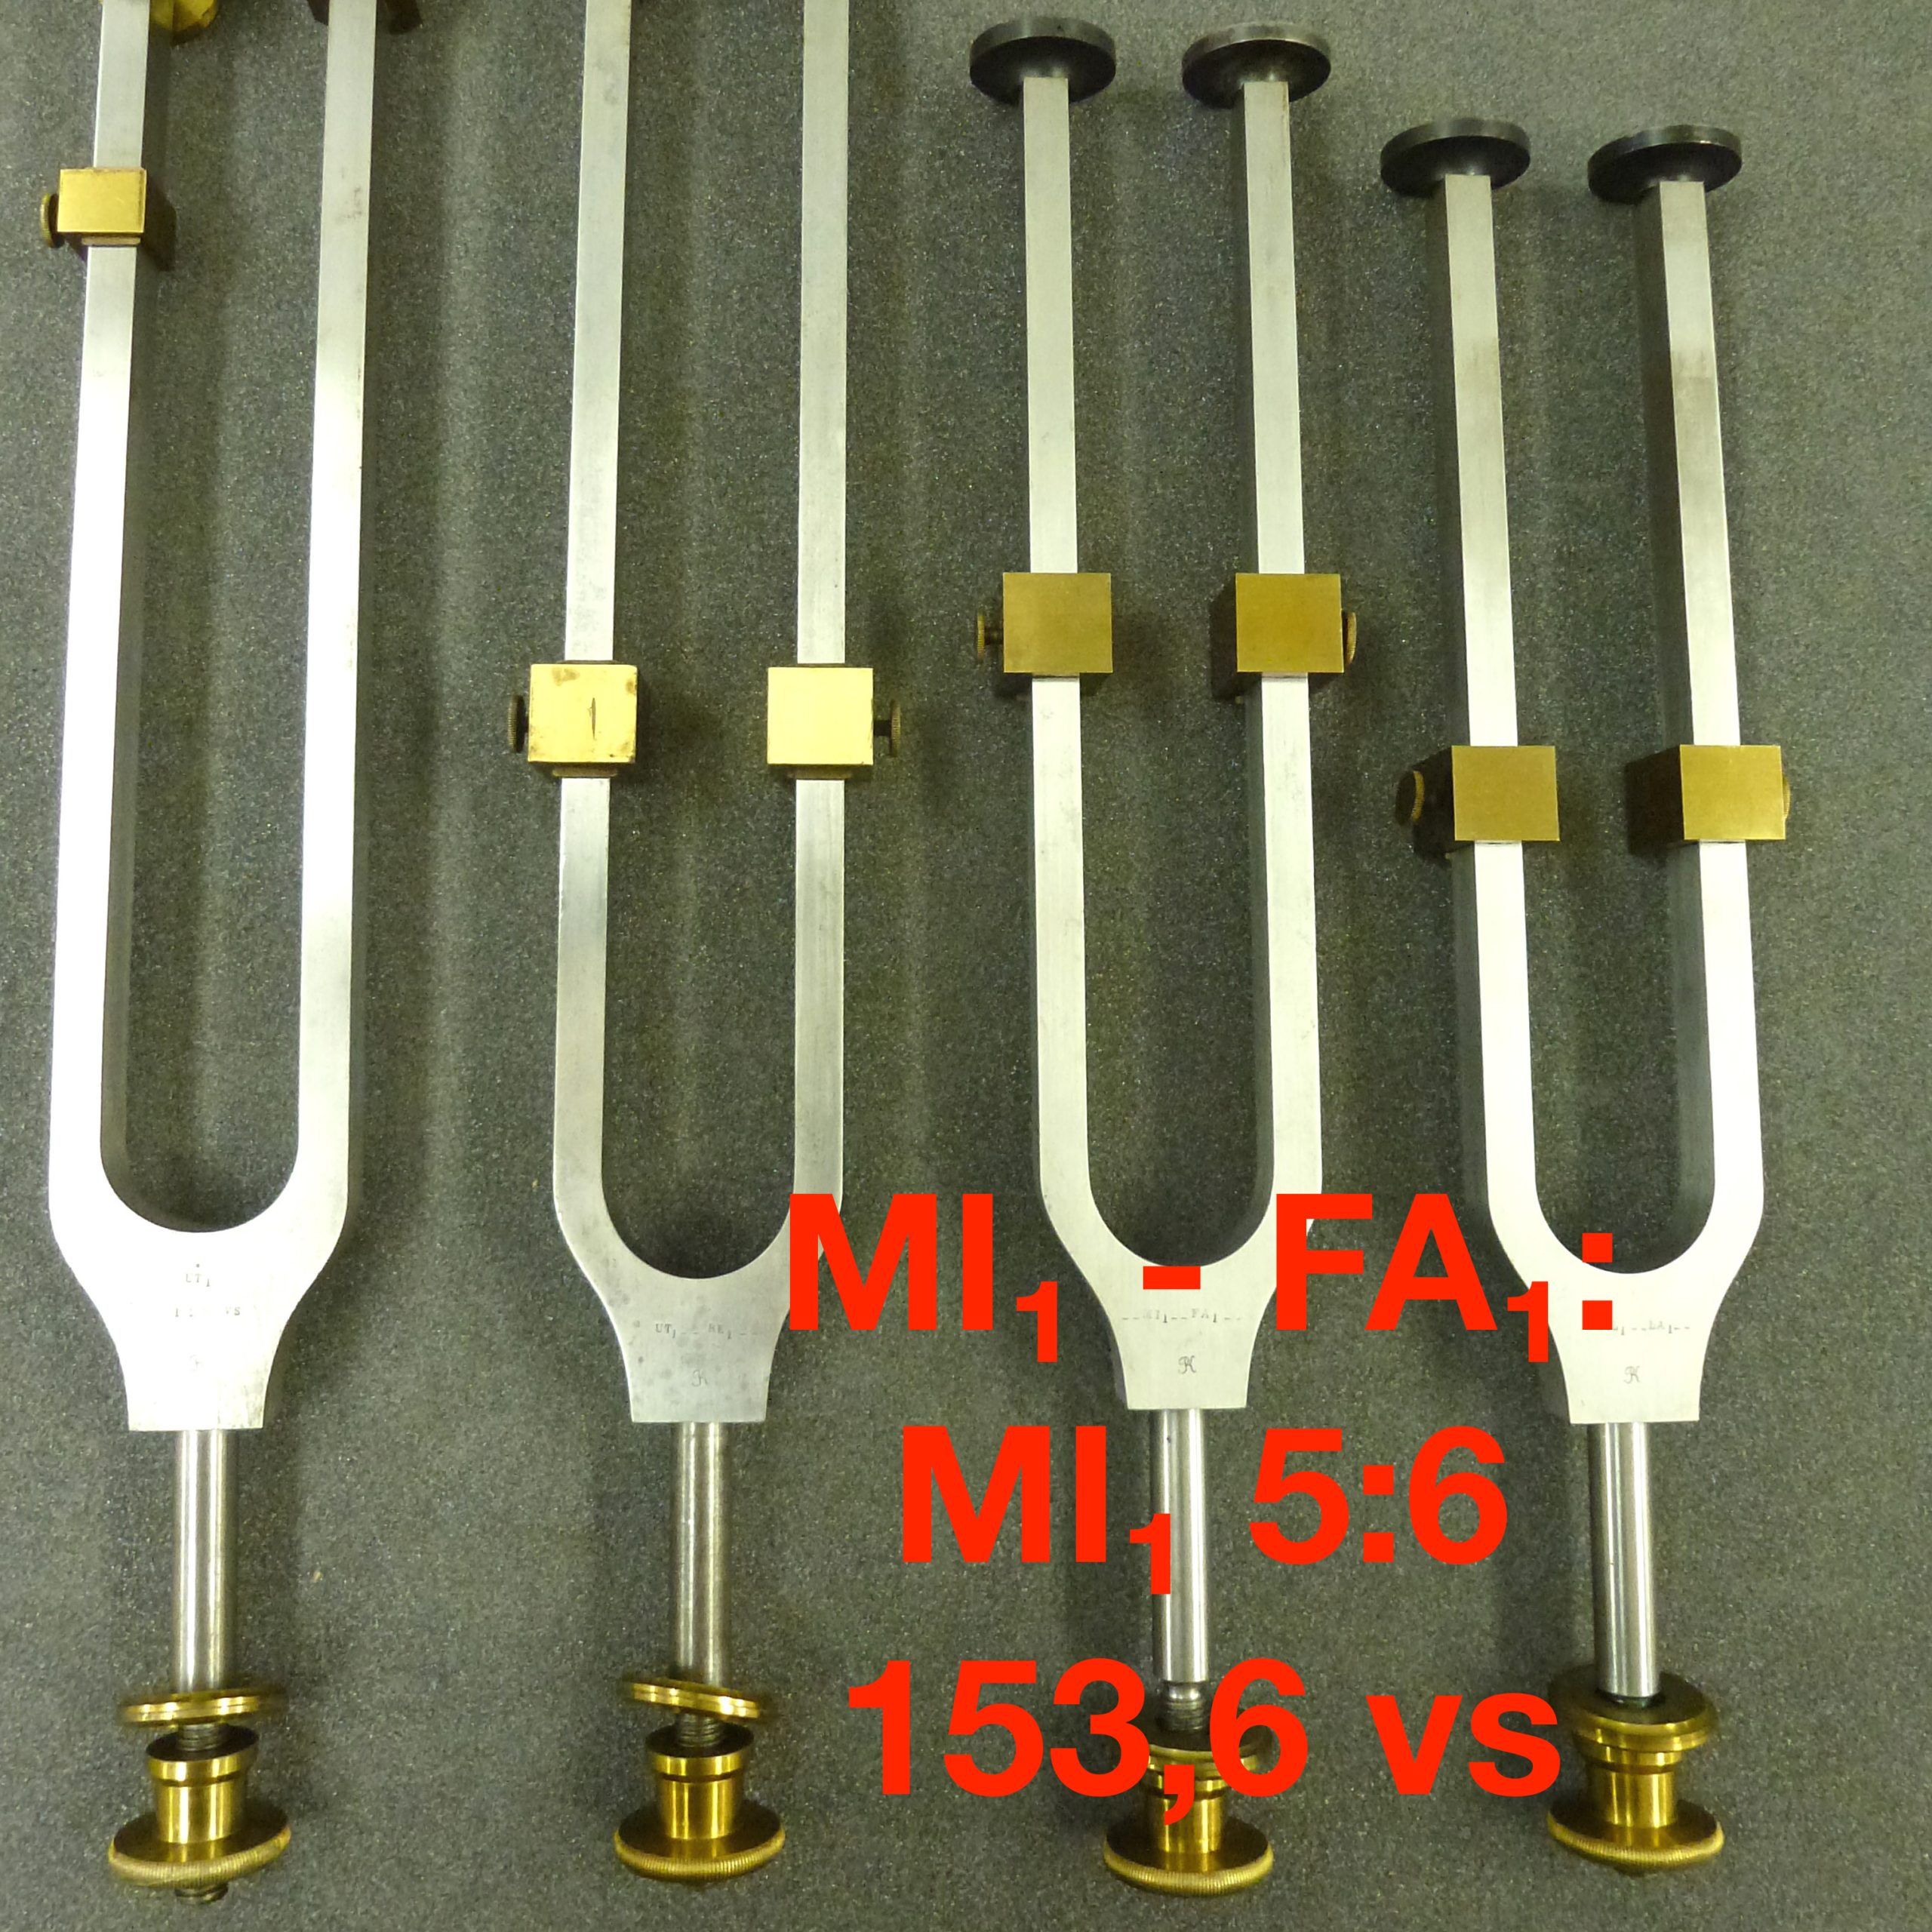 Tuning fork by Dr. R. König: MI₁ - FA₁: MI₁ 5:6